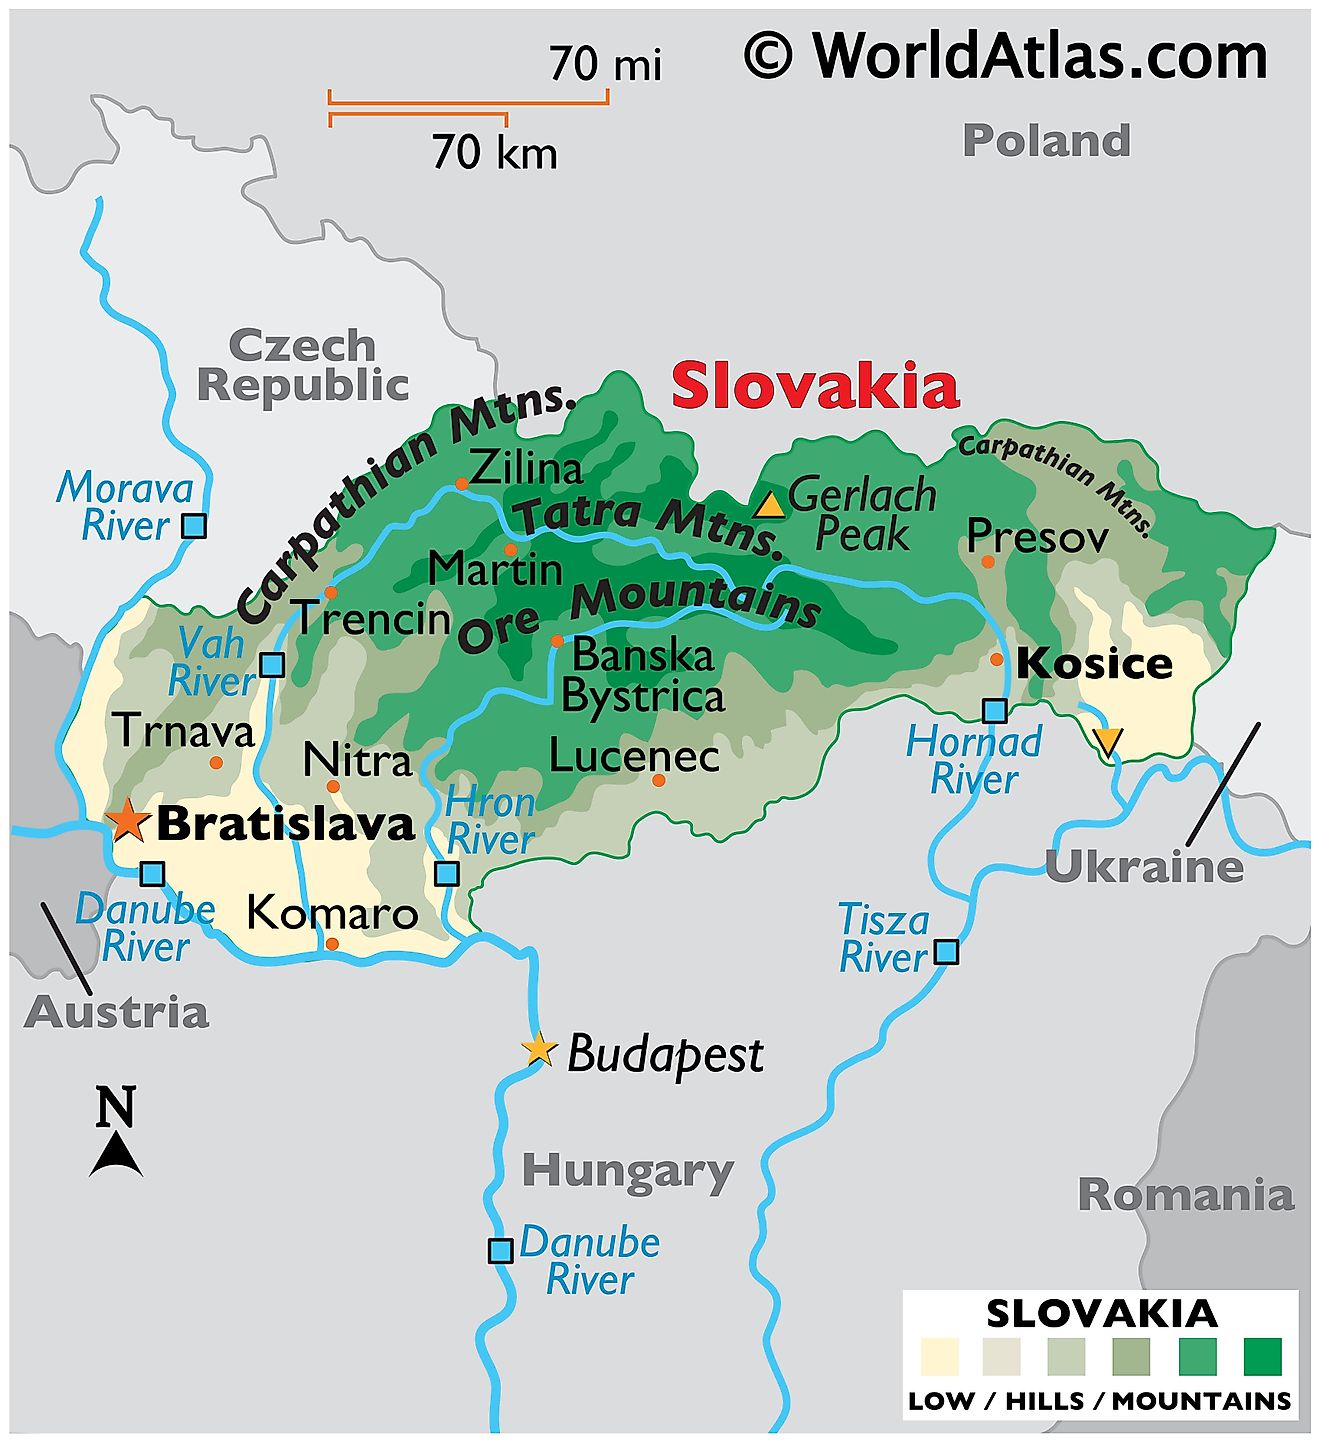 Mapa físico de Eslovaquia que muestra el terreno, las principales cadenas montañosas, los puntos más altos y más bajos, los principales ríos, las fronteras internacionales, etc.